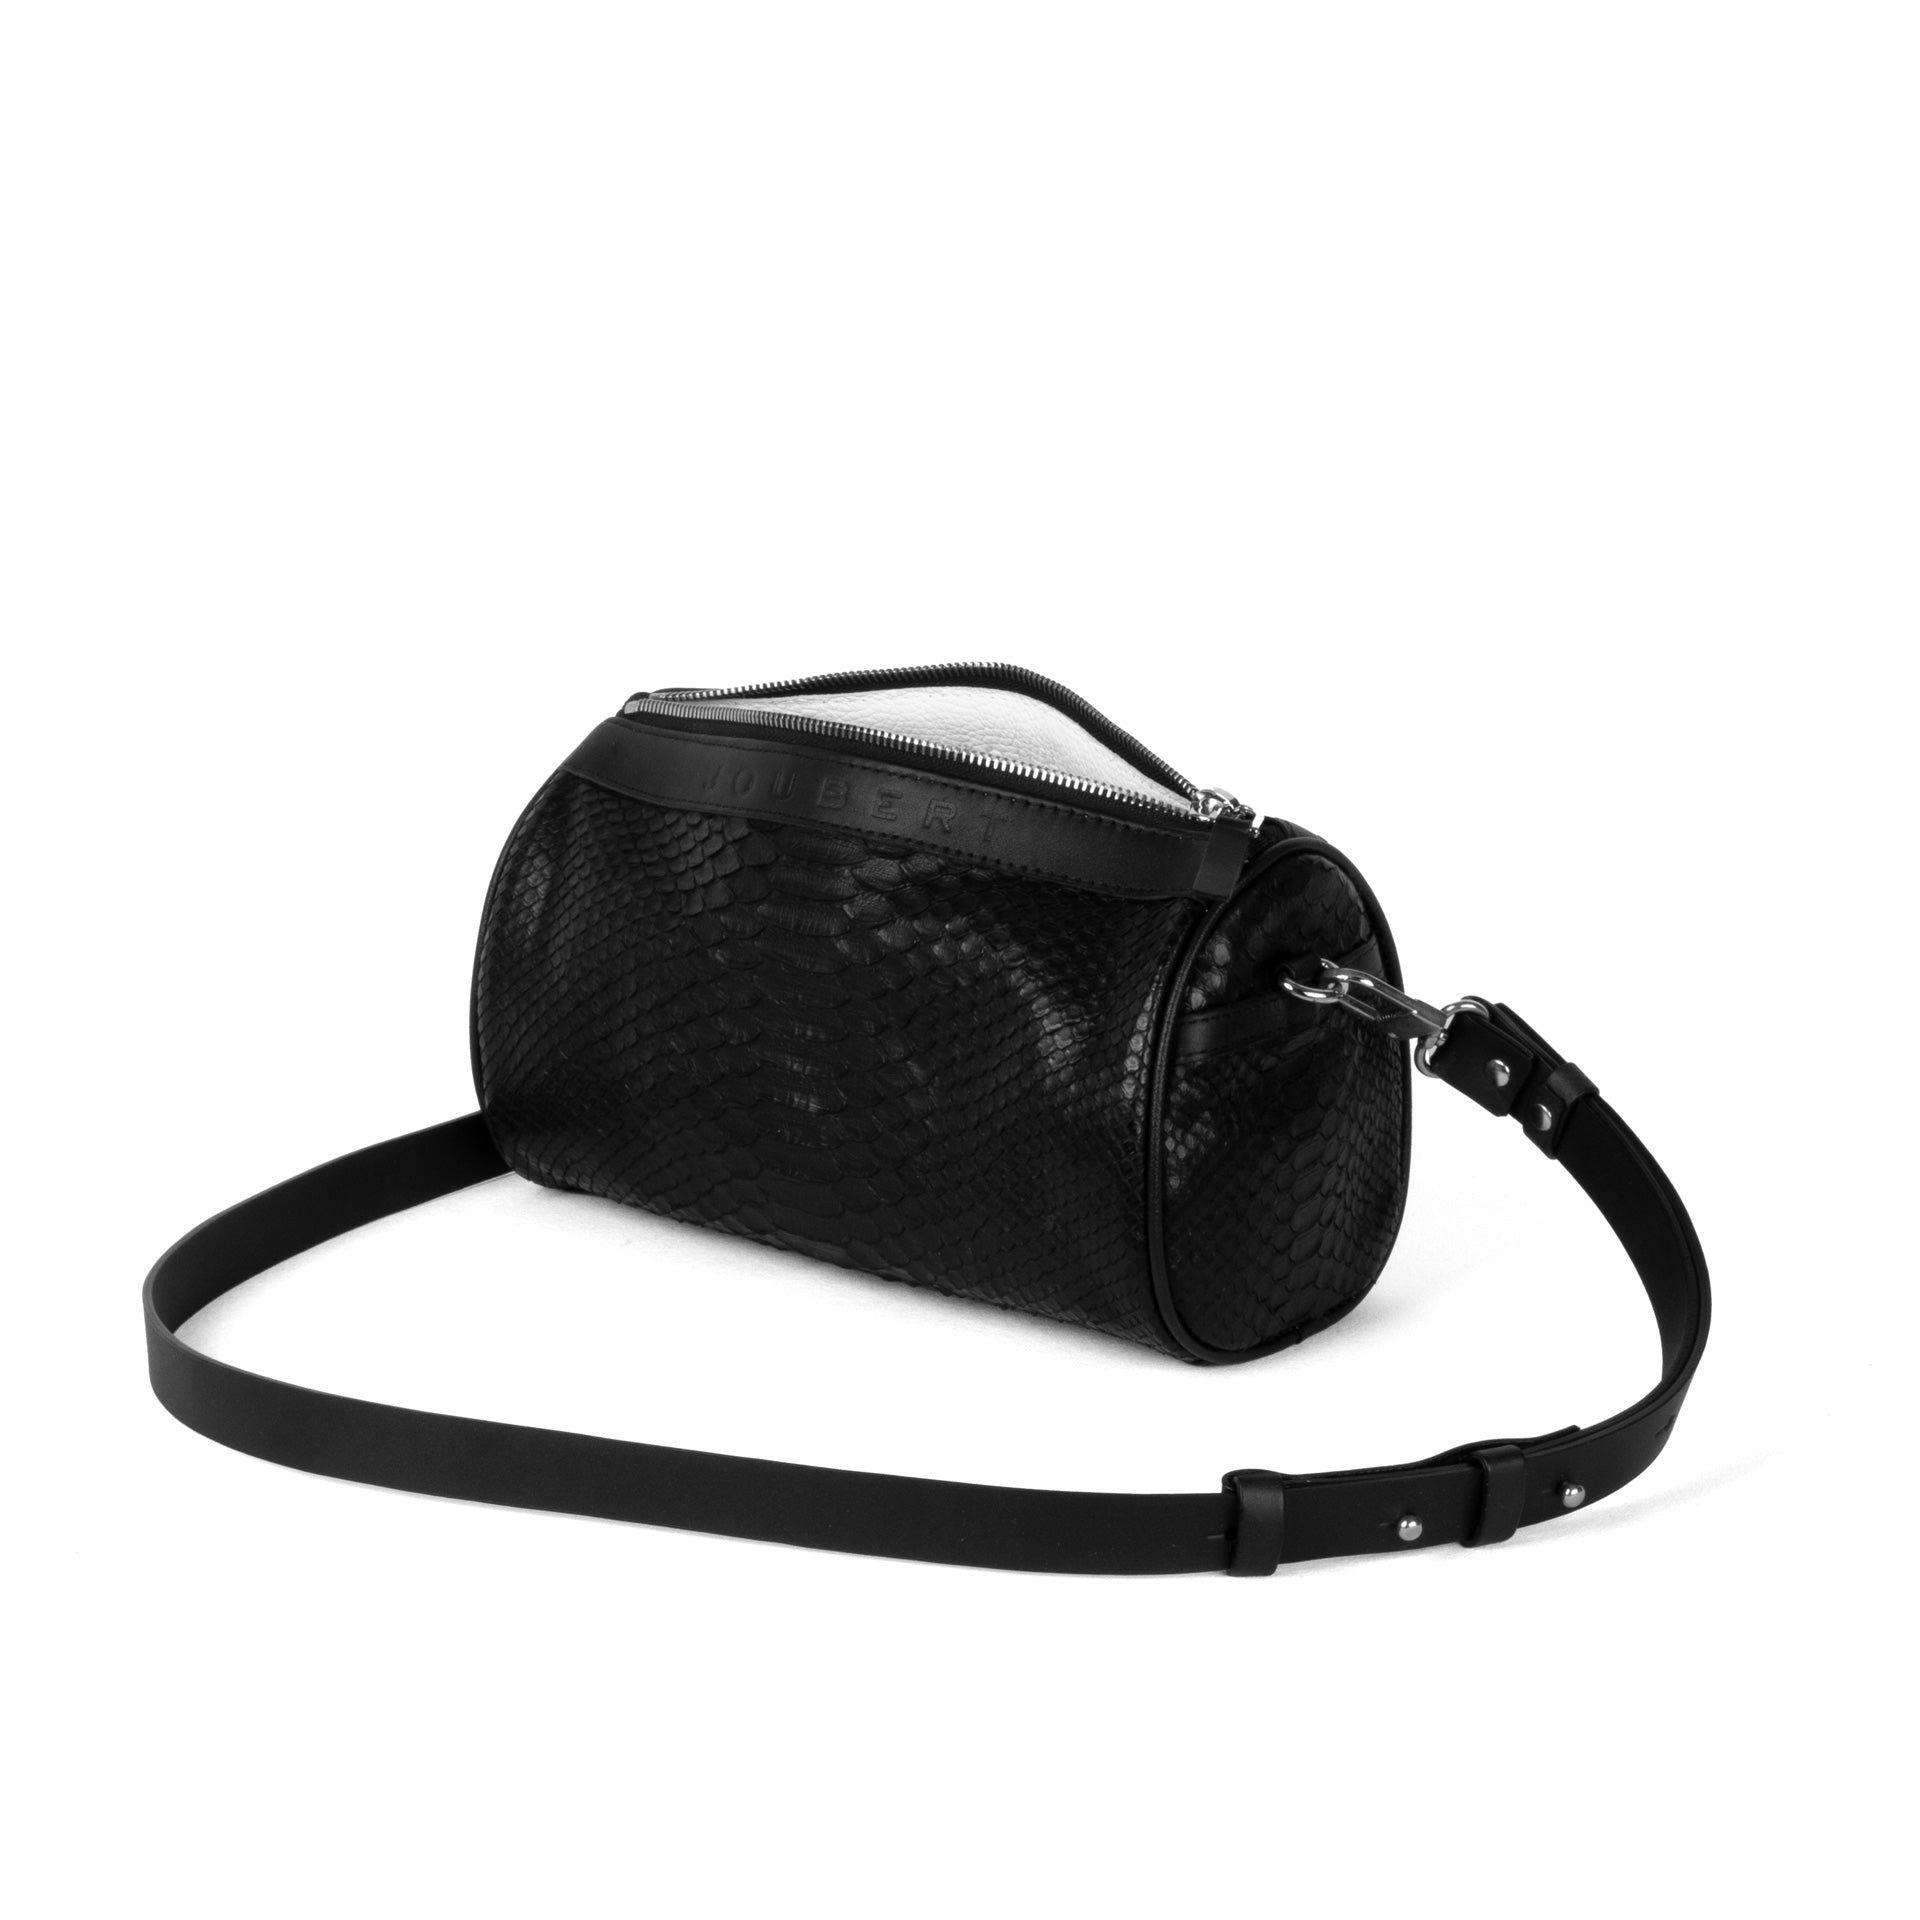 Bag 22 - Python leather